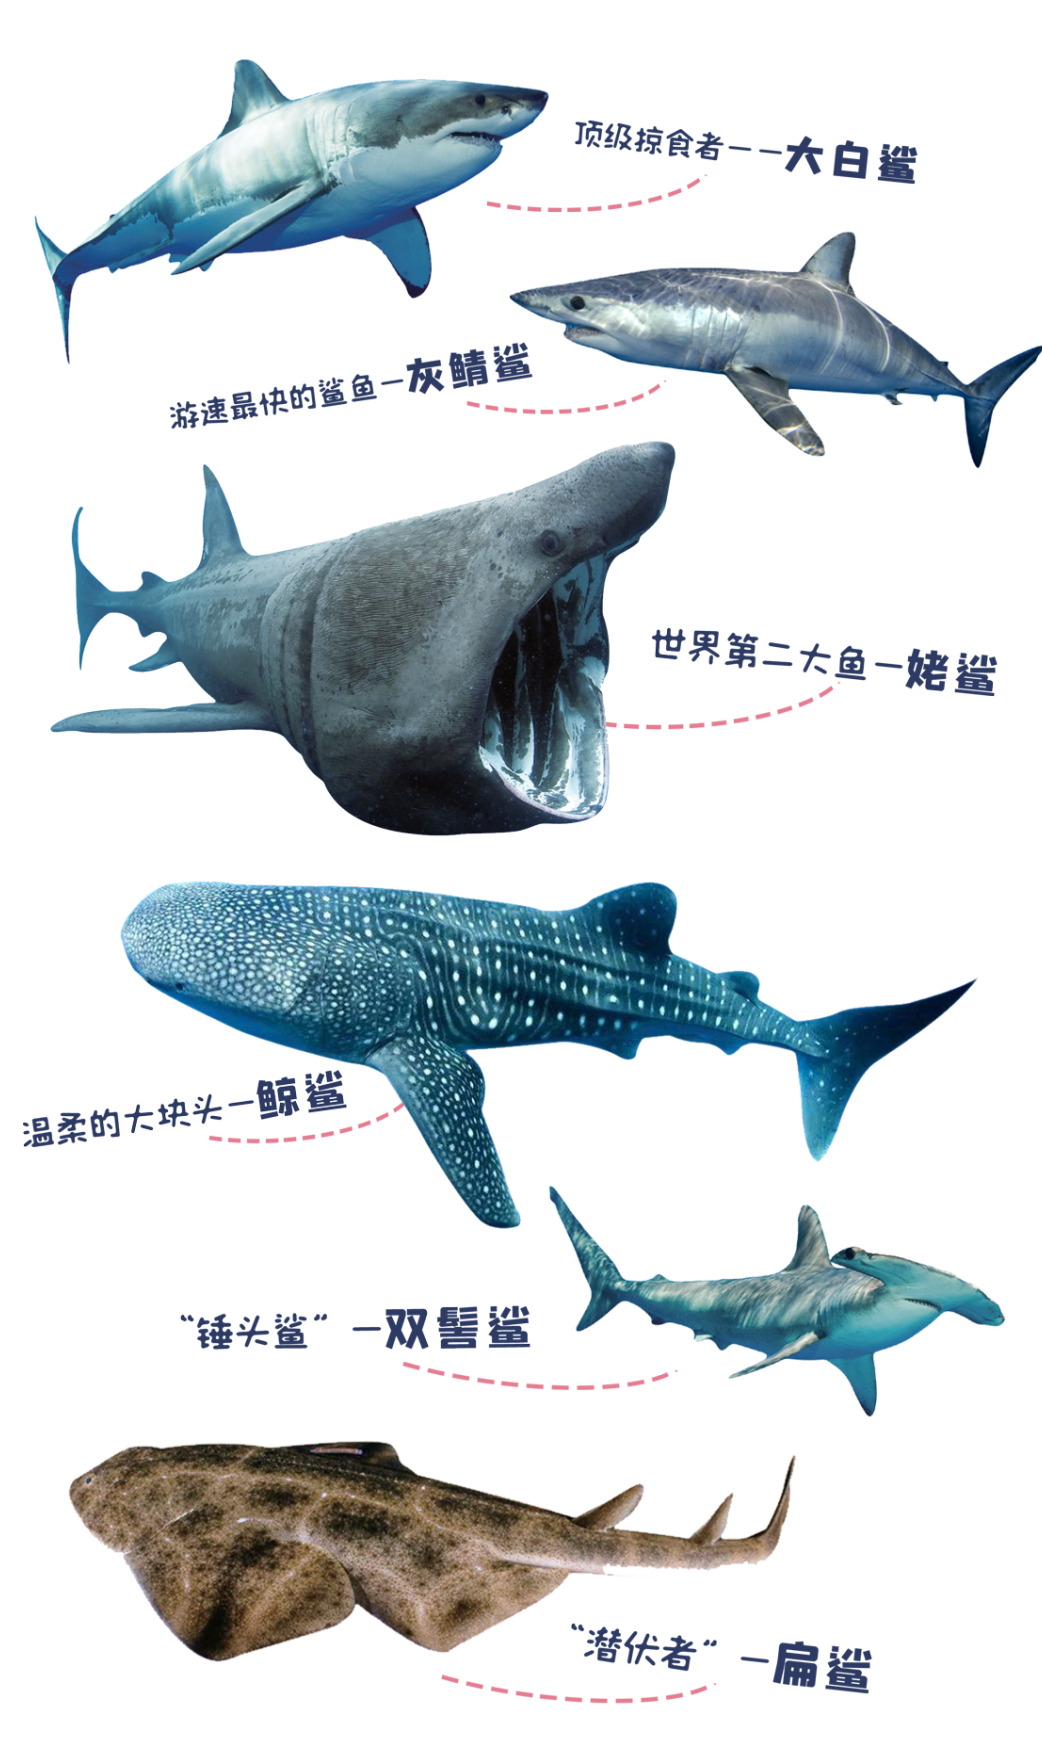 不同种类的鲨鱼各有什么性格特点？ - 知乎